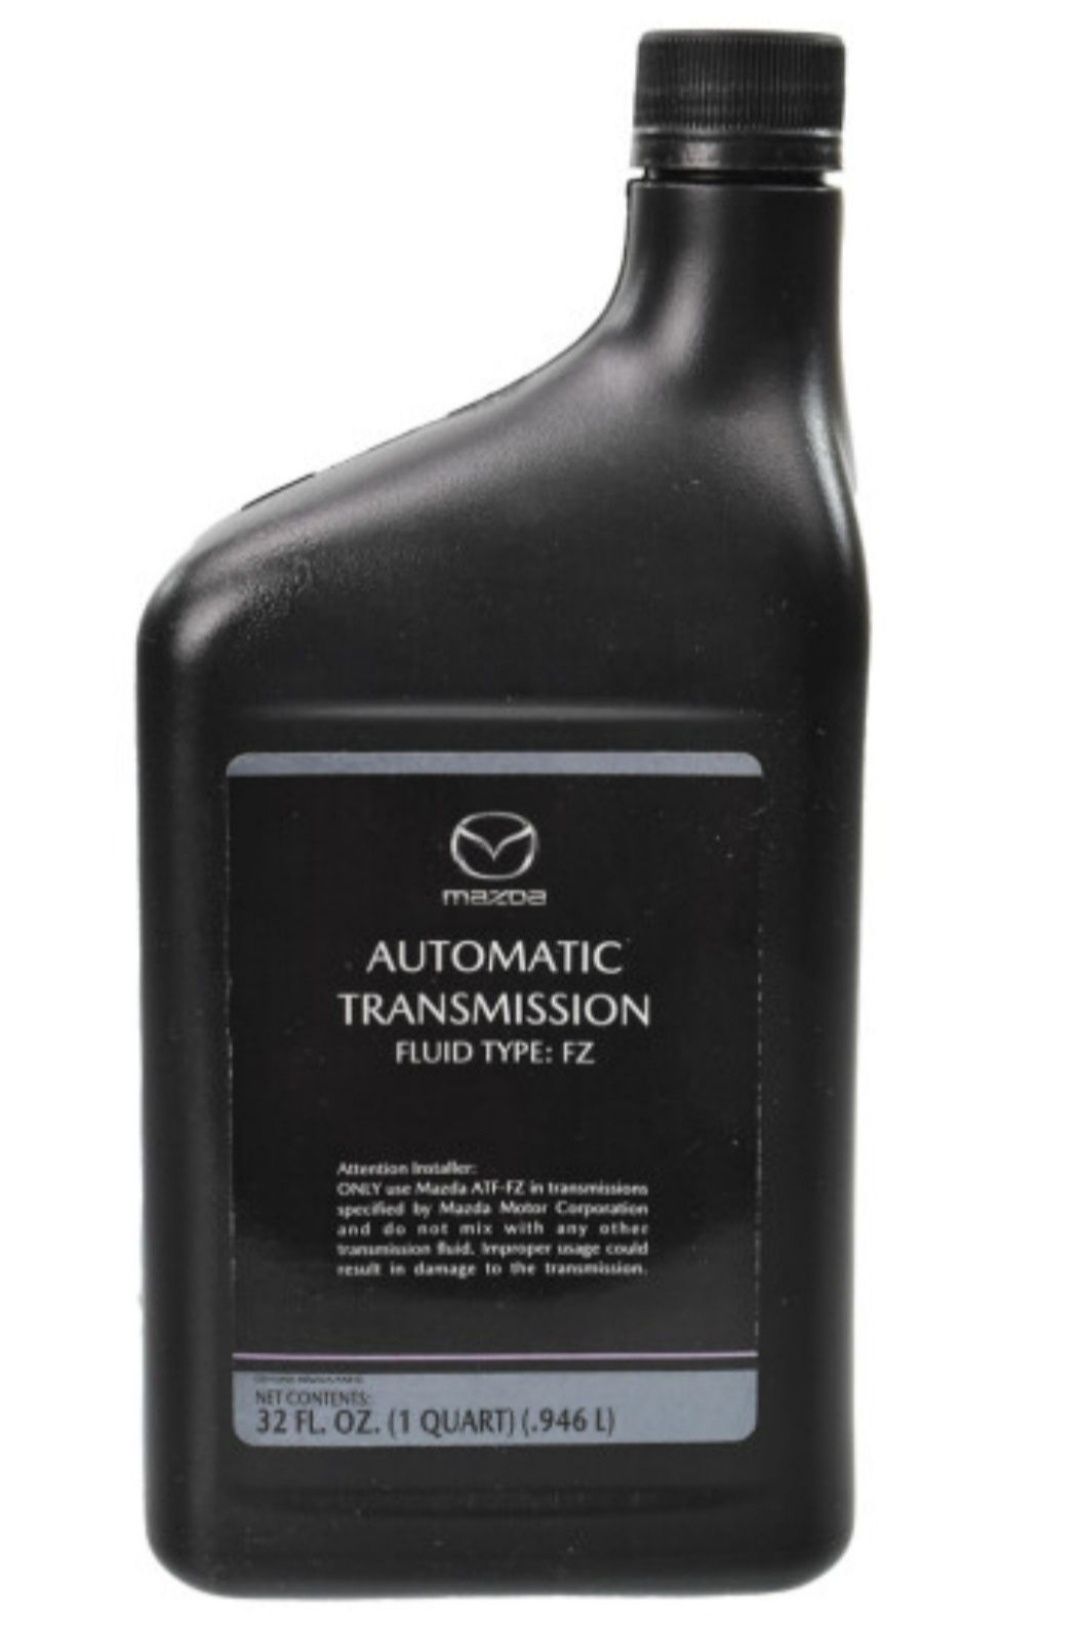 Оригинальное масло для АКПП Mazda Fluid Type FZ